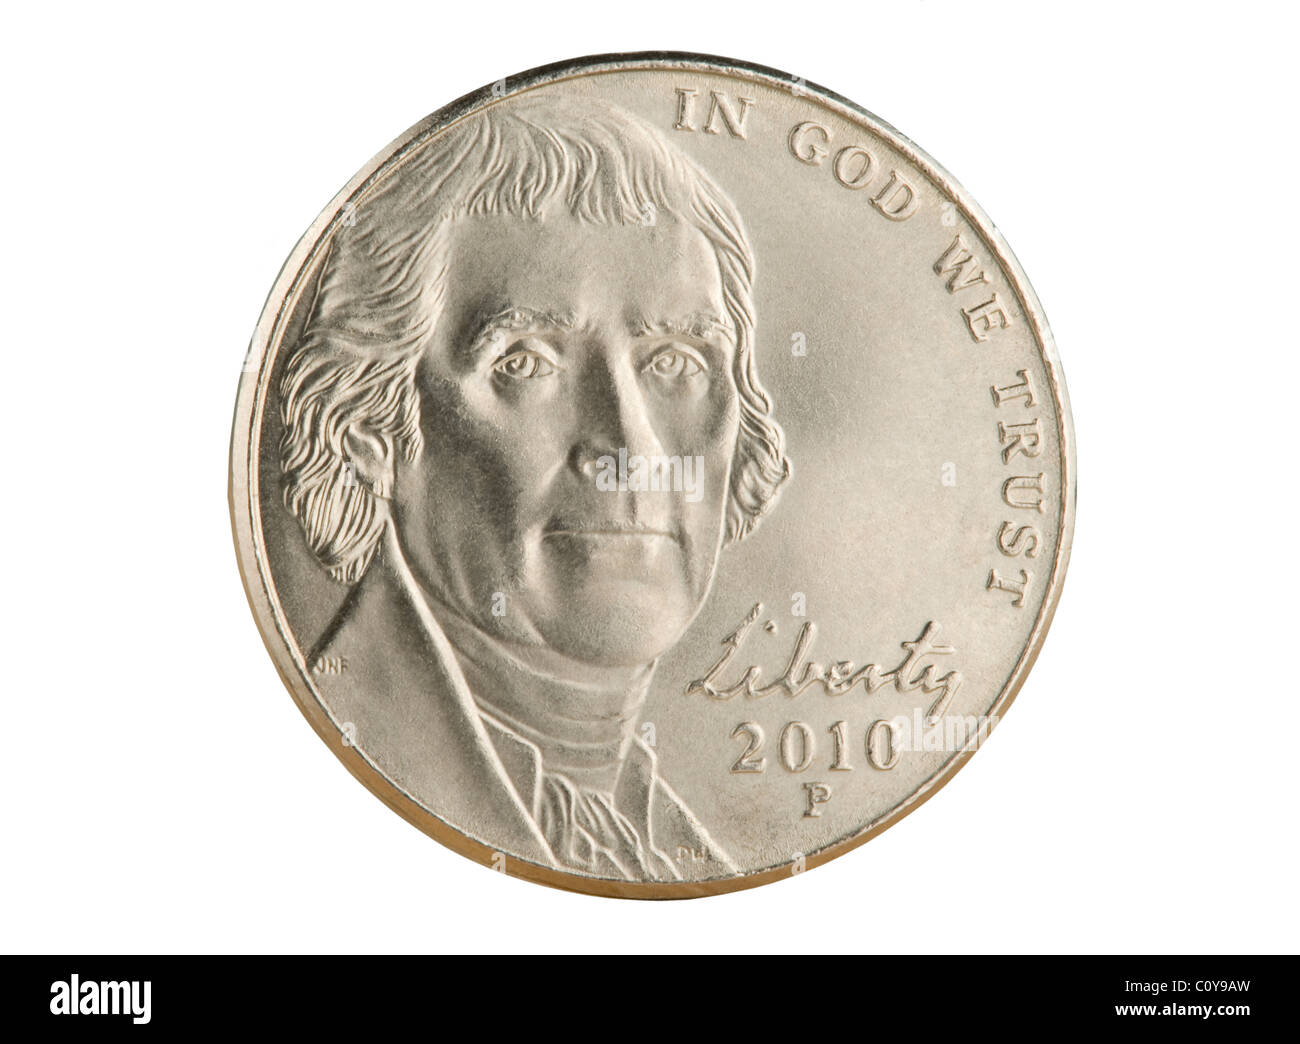 2010 Noi moneta di nichel. Il valore nominale di 5 centesimi di euro è ora inferiore al valore dei metalli in moneta. Foto Stock